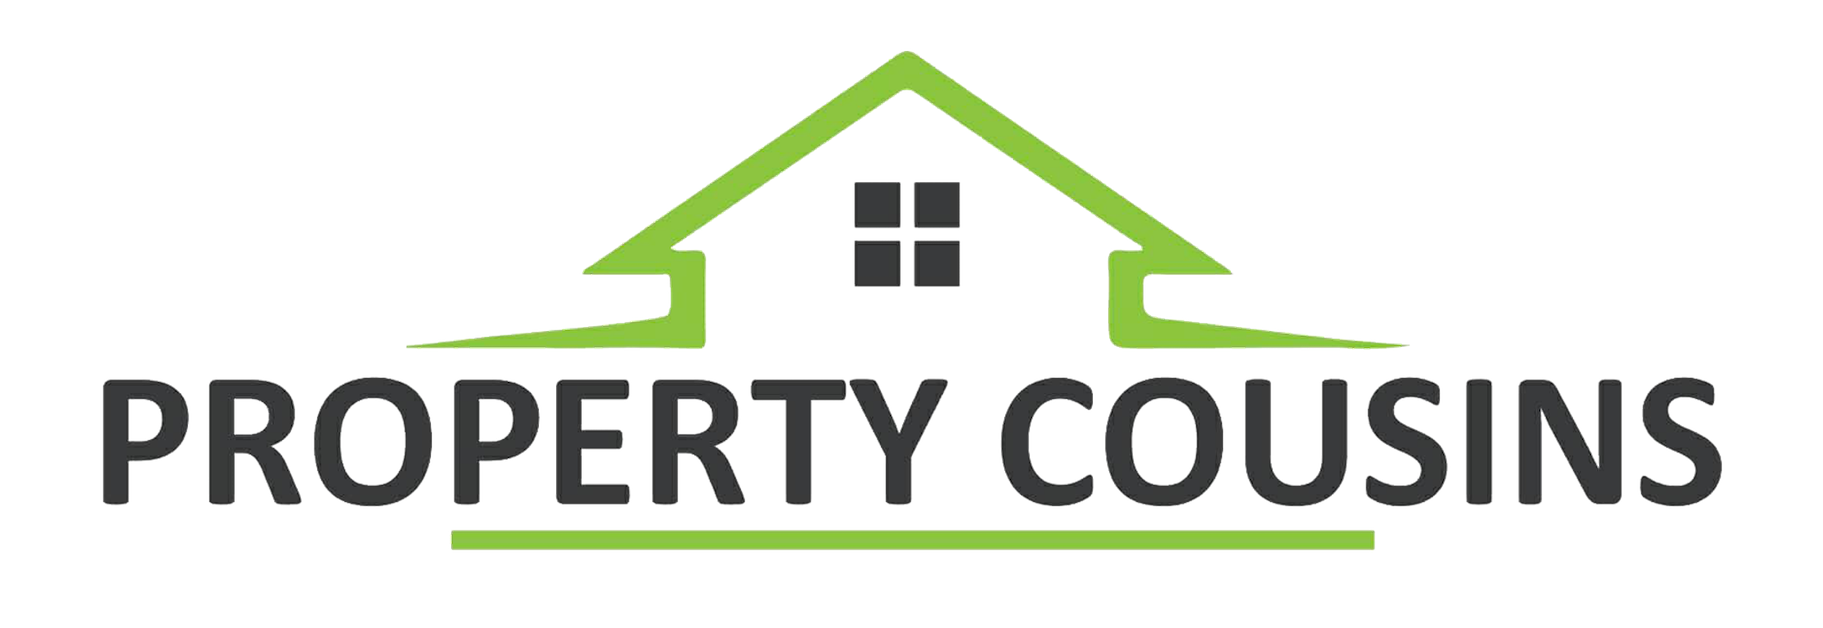 Property Cousins Logo